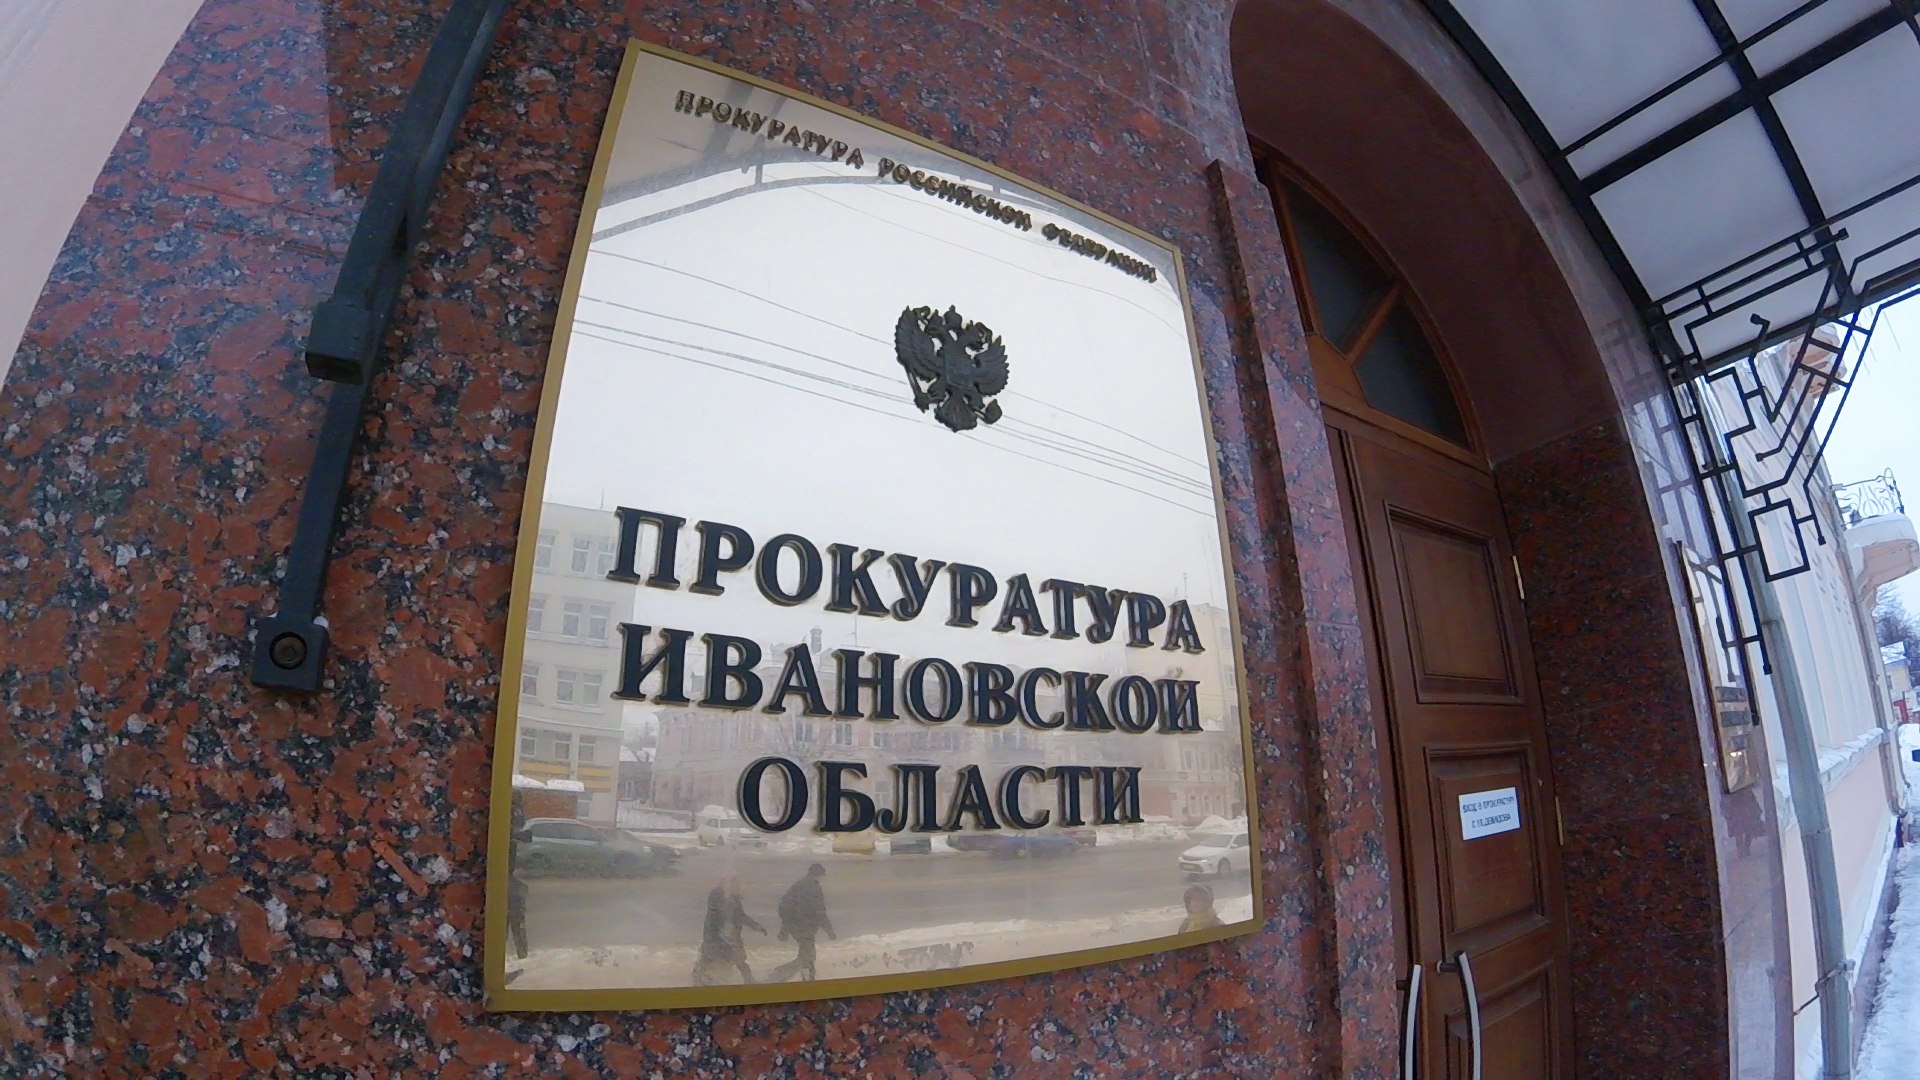 При проверке состояния многоквартирного дома в Иванове выявили многочисленные нарушения